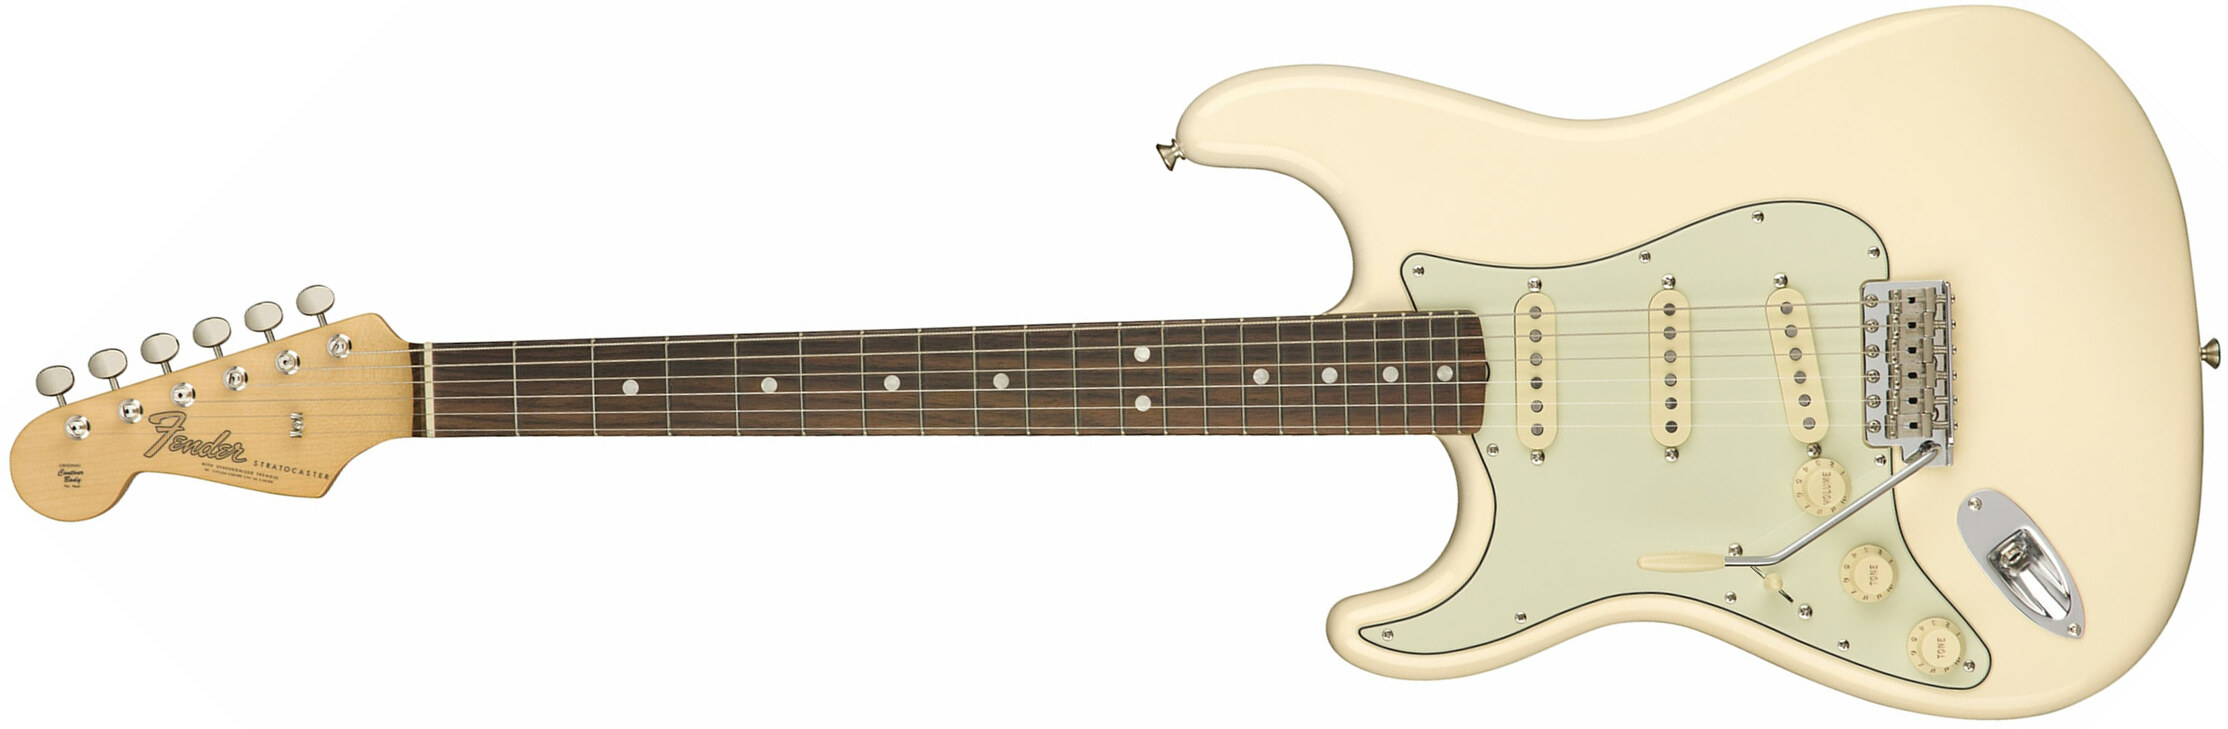 Fender Strat '60s Lh Gaucher American Original Usa Sss Rw - Olympic White - Linkshandige elektrische gitaar - Main picture